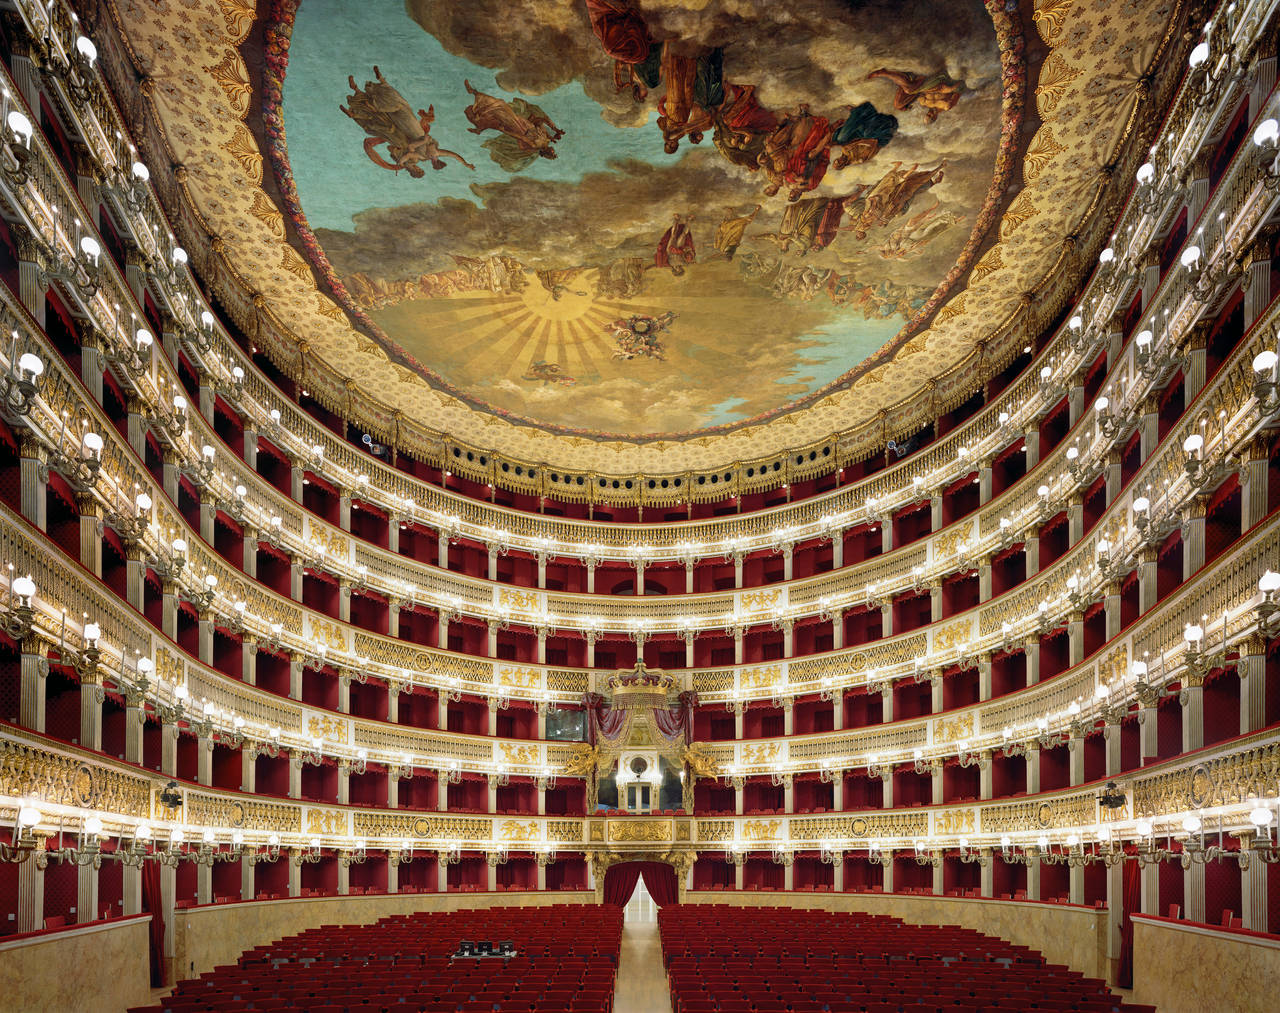 Teatro Di San Carlo, Naples, Italy - Photograph by David Leventi